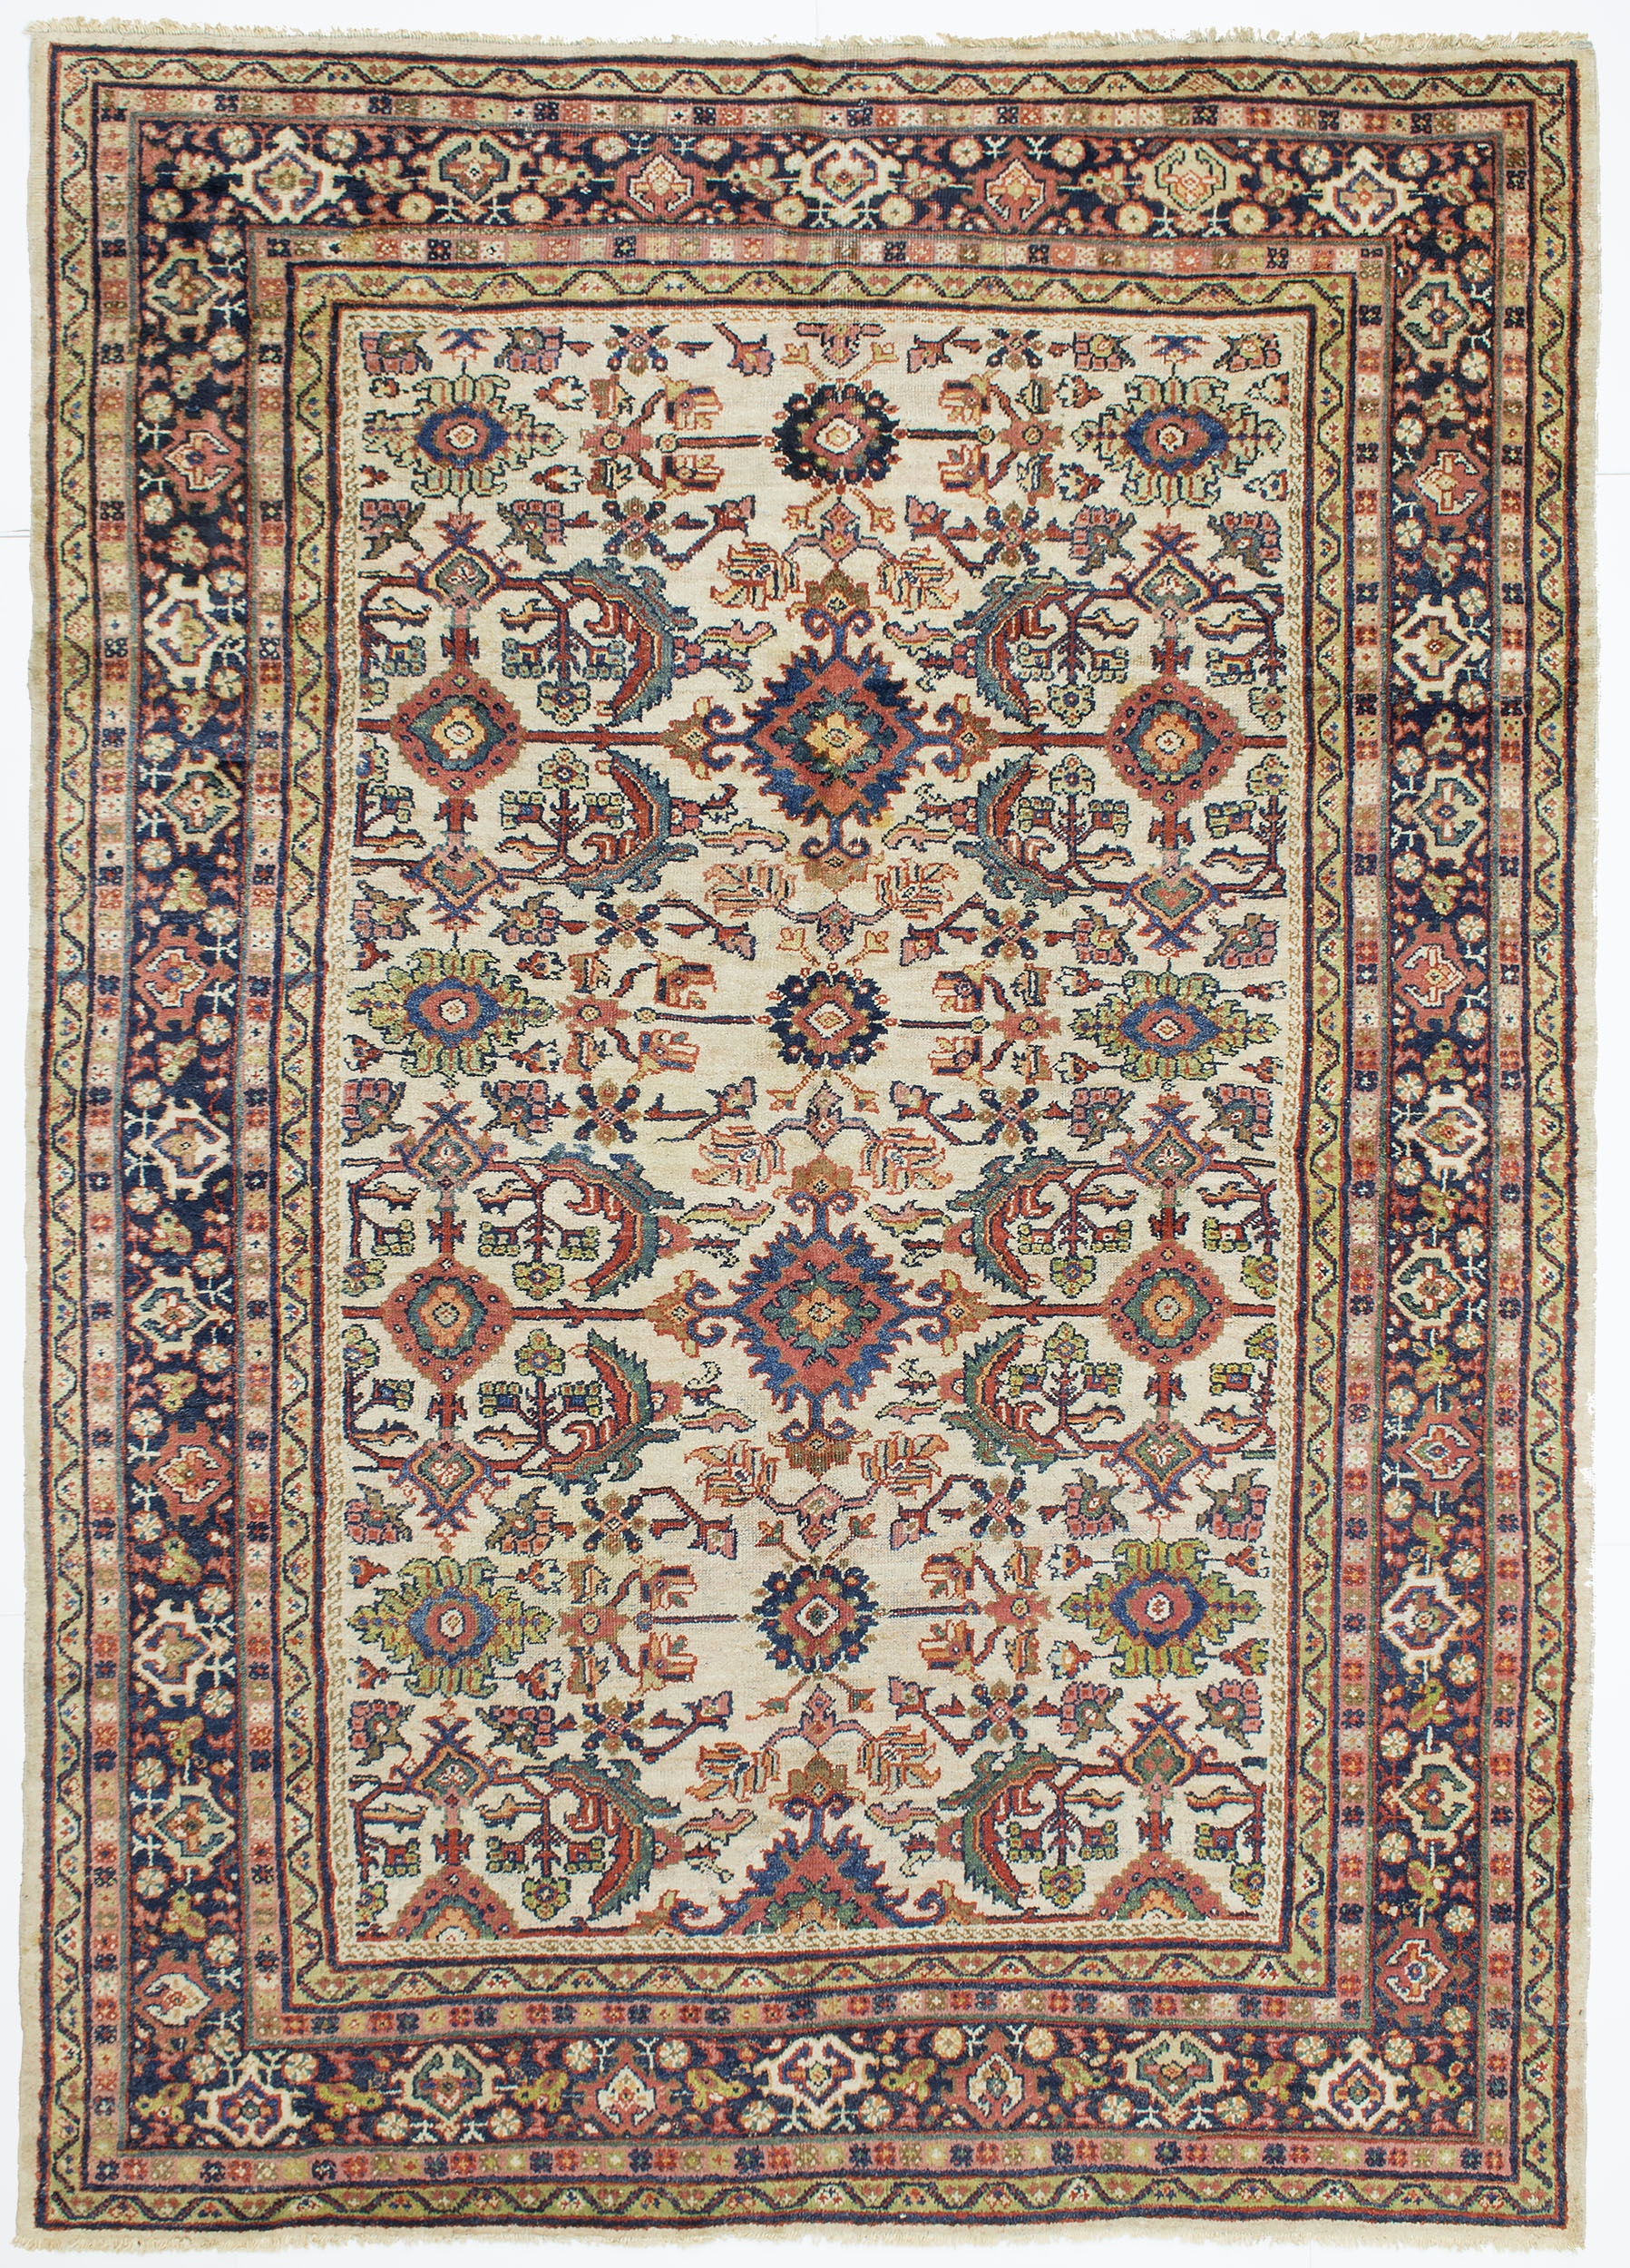 Mahal Carpet 10' 2" x 7' 2" 